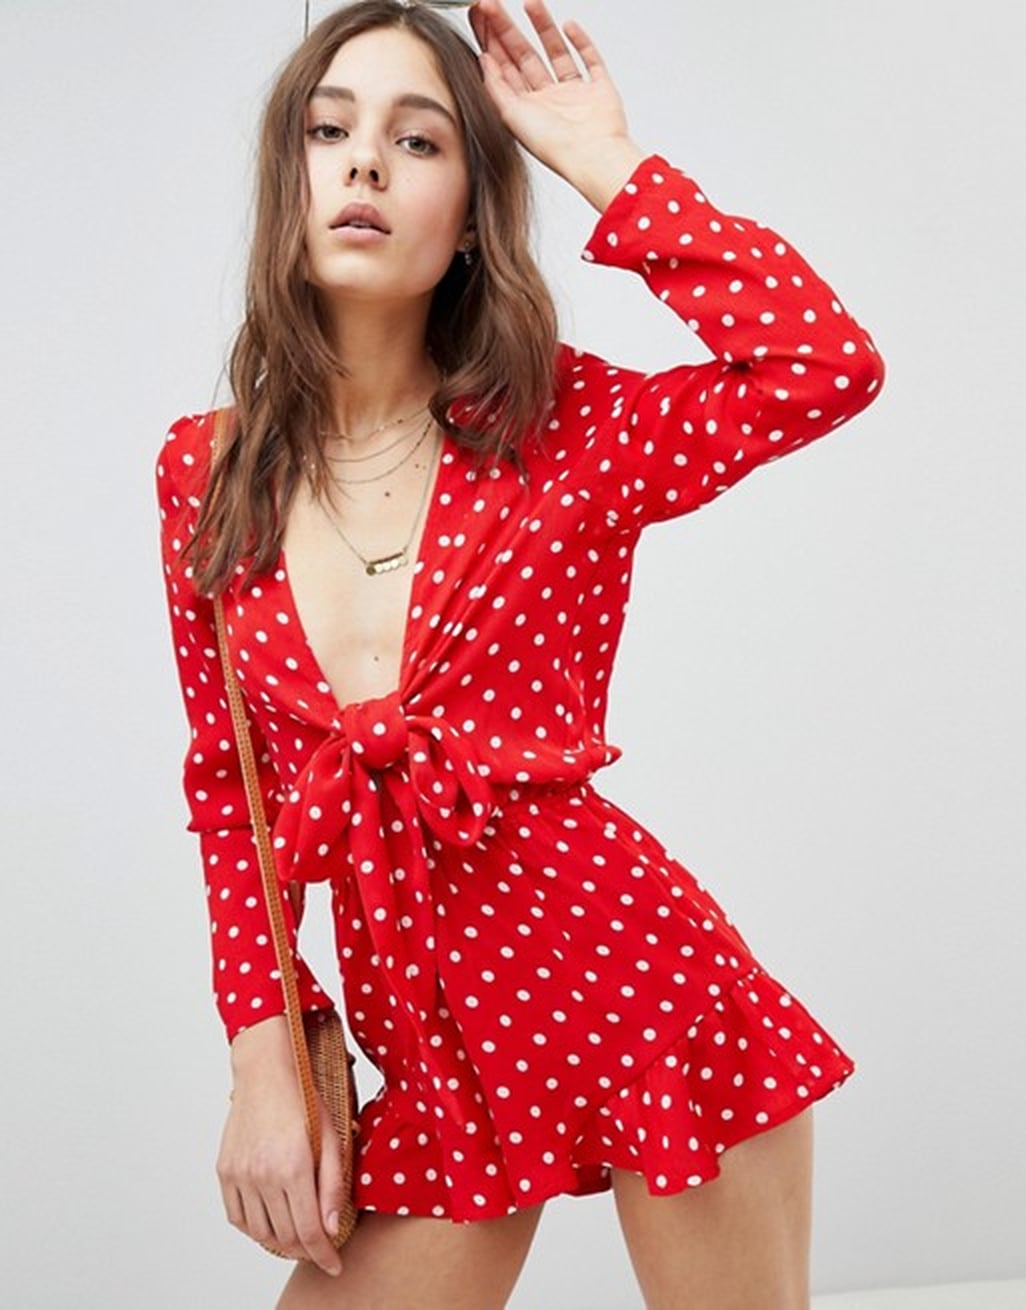 Olivia Munn's Red Polka-Dot Romper | POPSUGAR Fashion